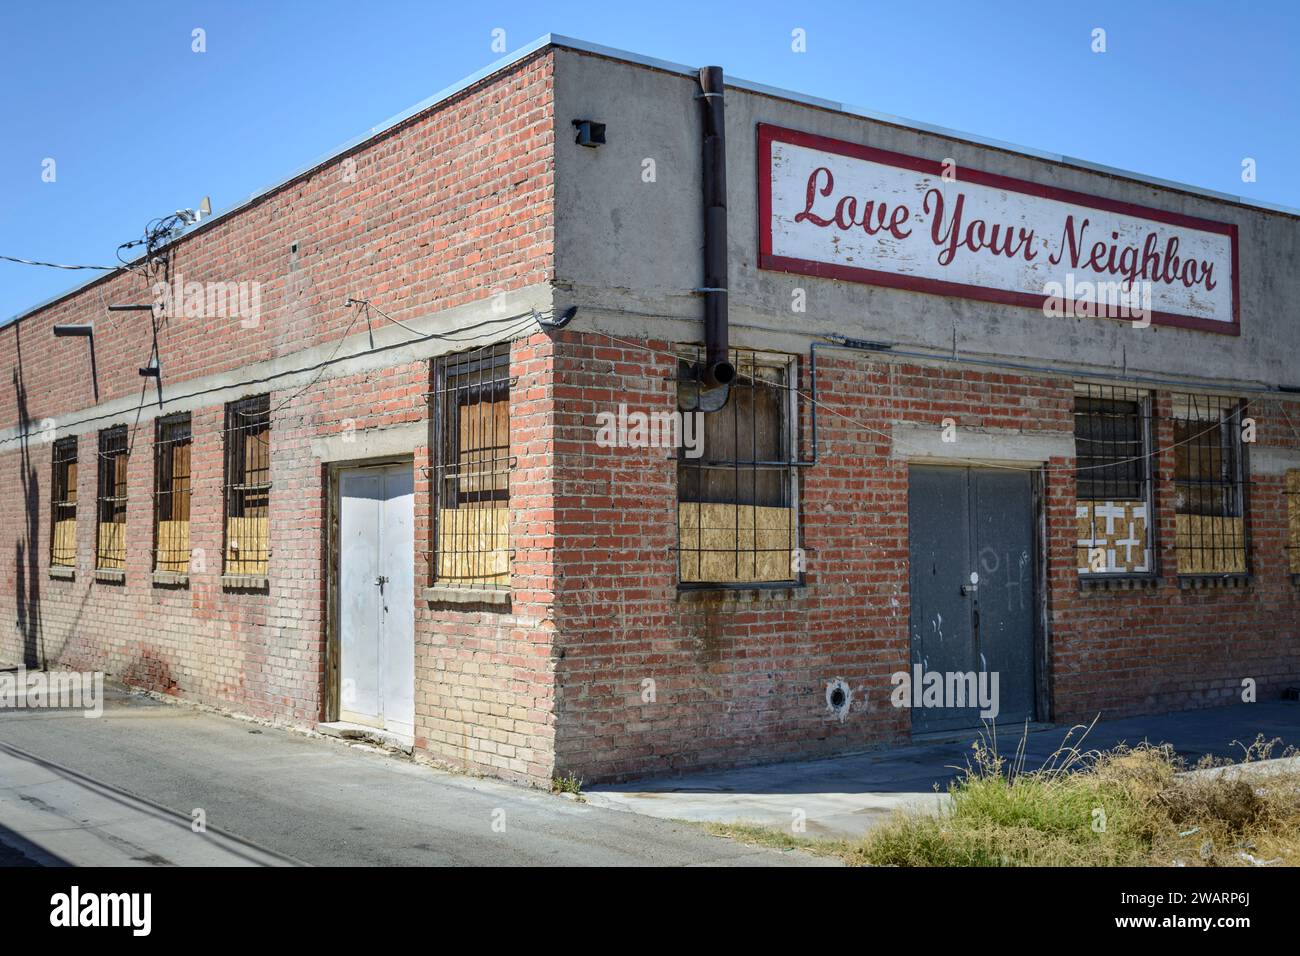 Un cartello su un vecchio magazzino a Mojave, California, dice: "Ama il tuo vicino". Foto Stock